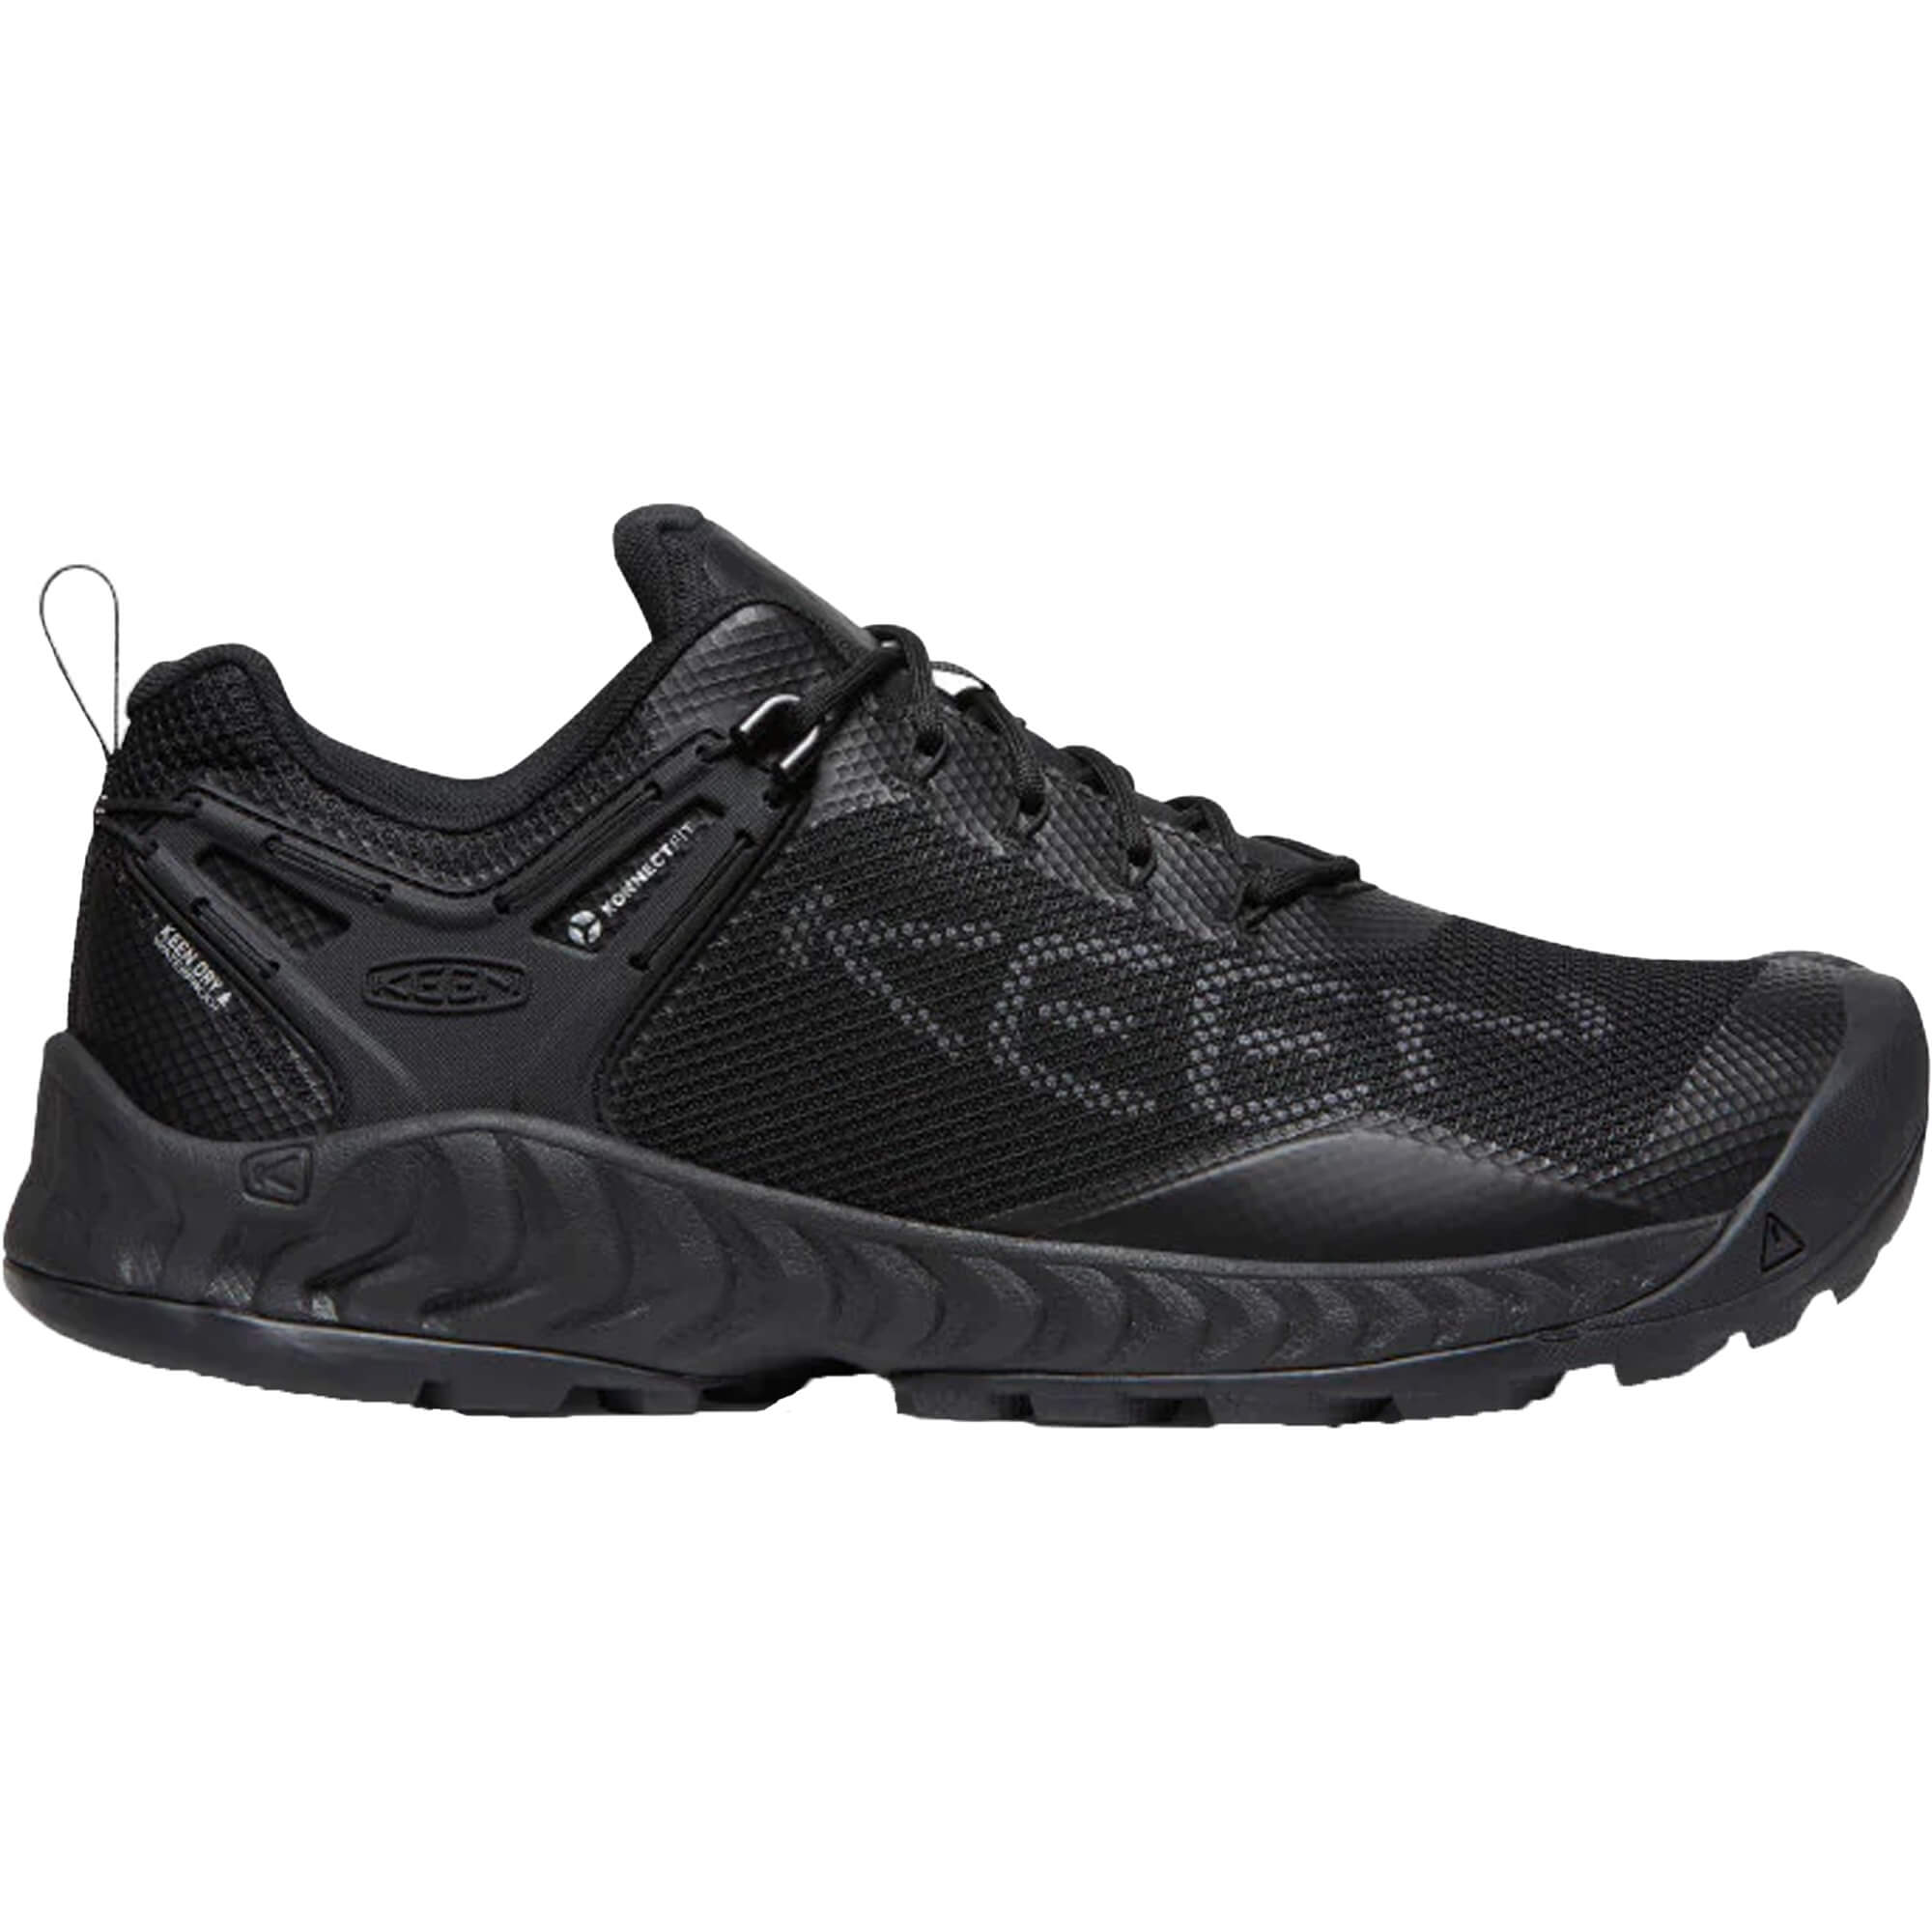 Keen NXIS EVO Waterproof Hiking Shoes